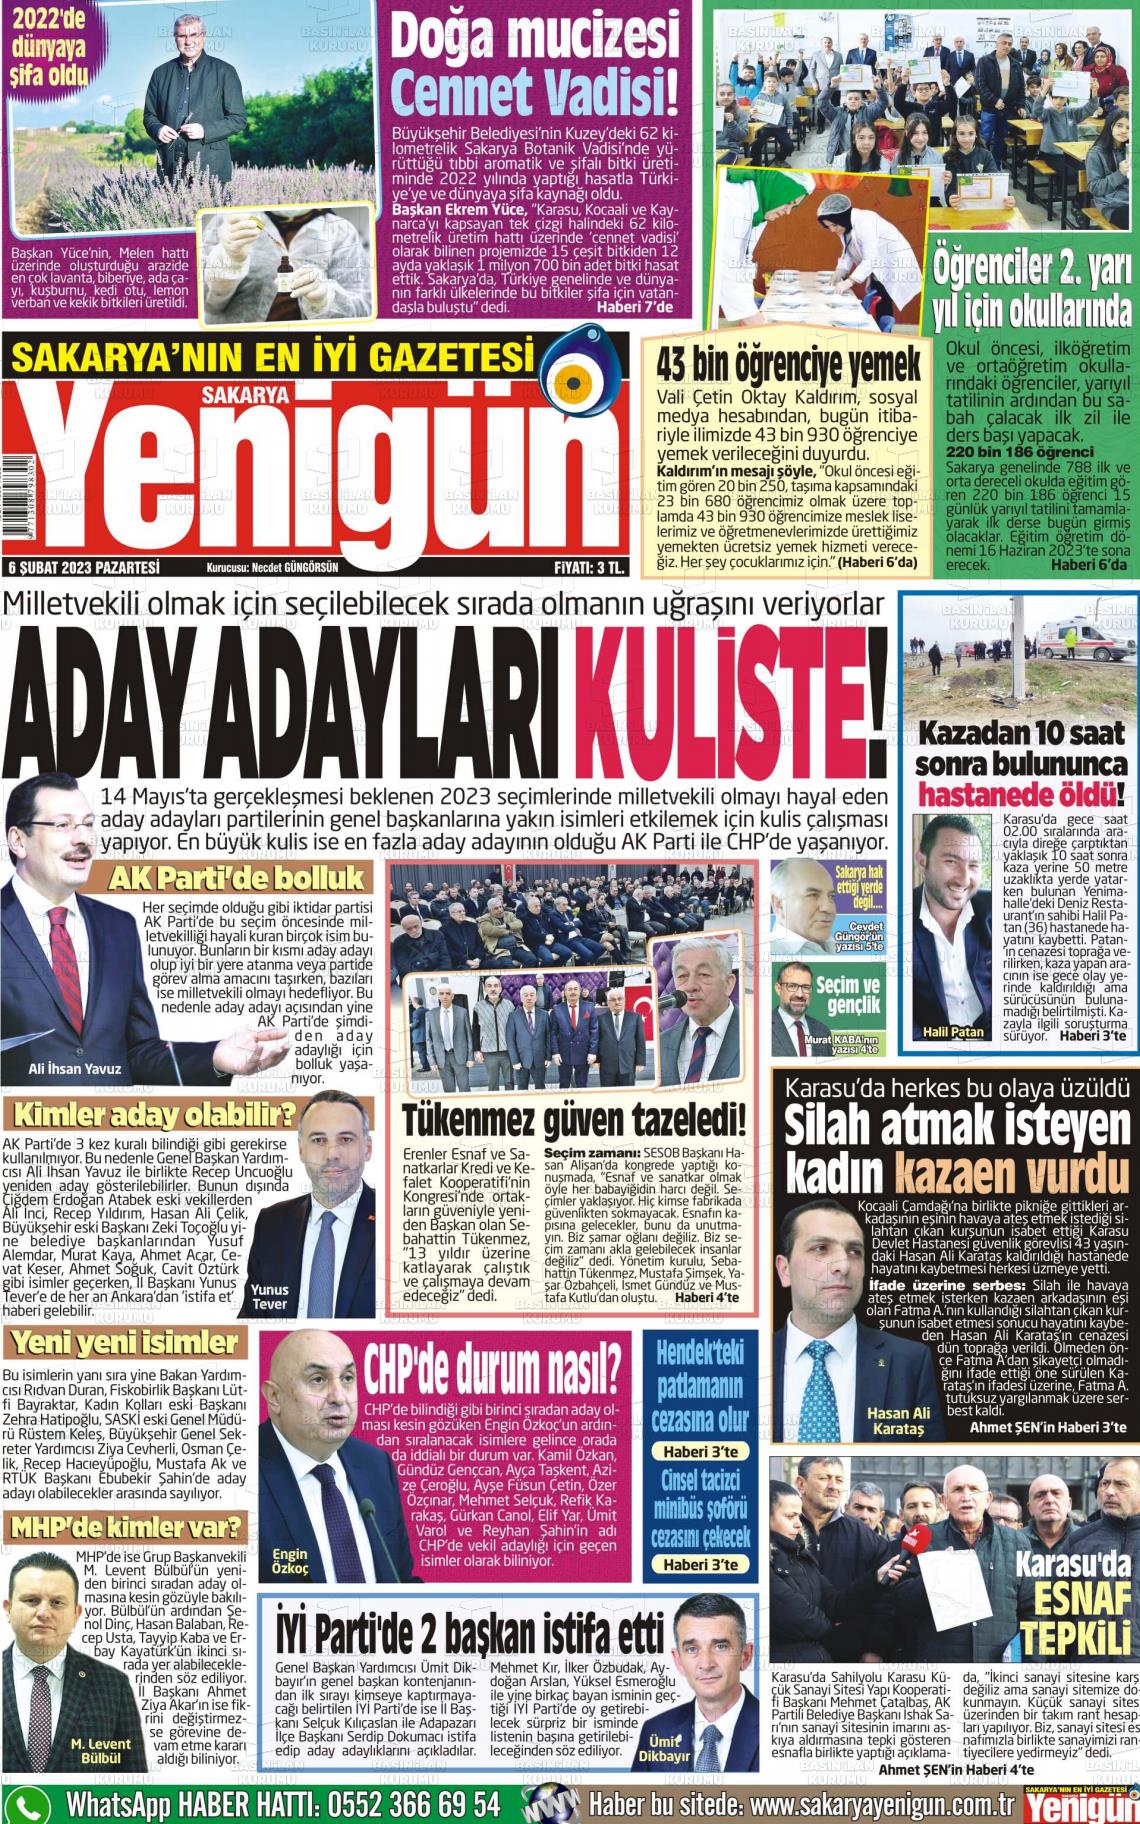 06 Şubat 2023 Sakarya Yenigün Gazete Manşeti